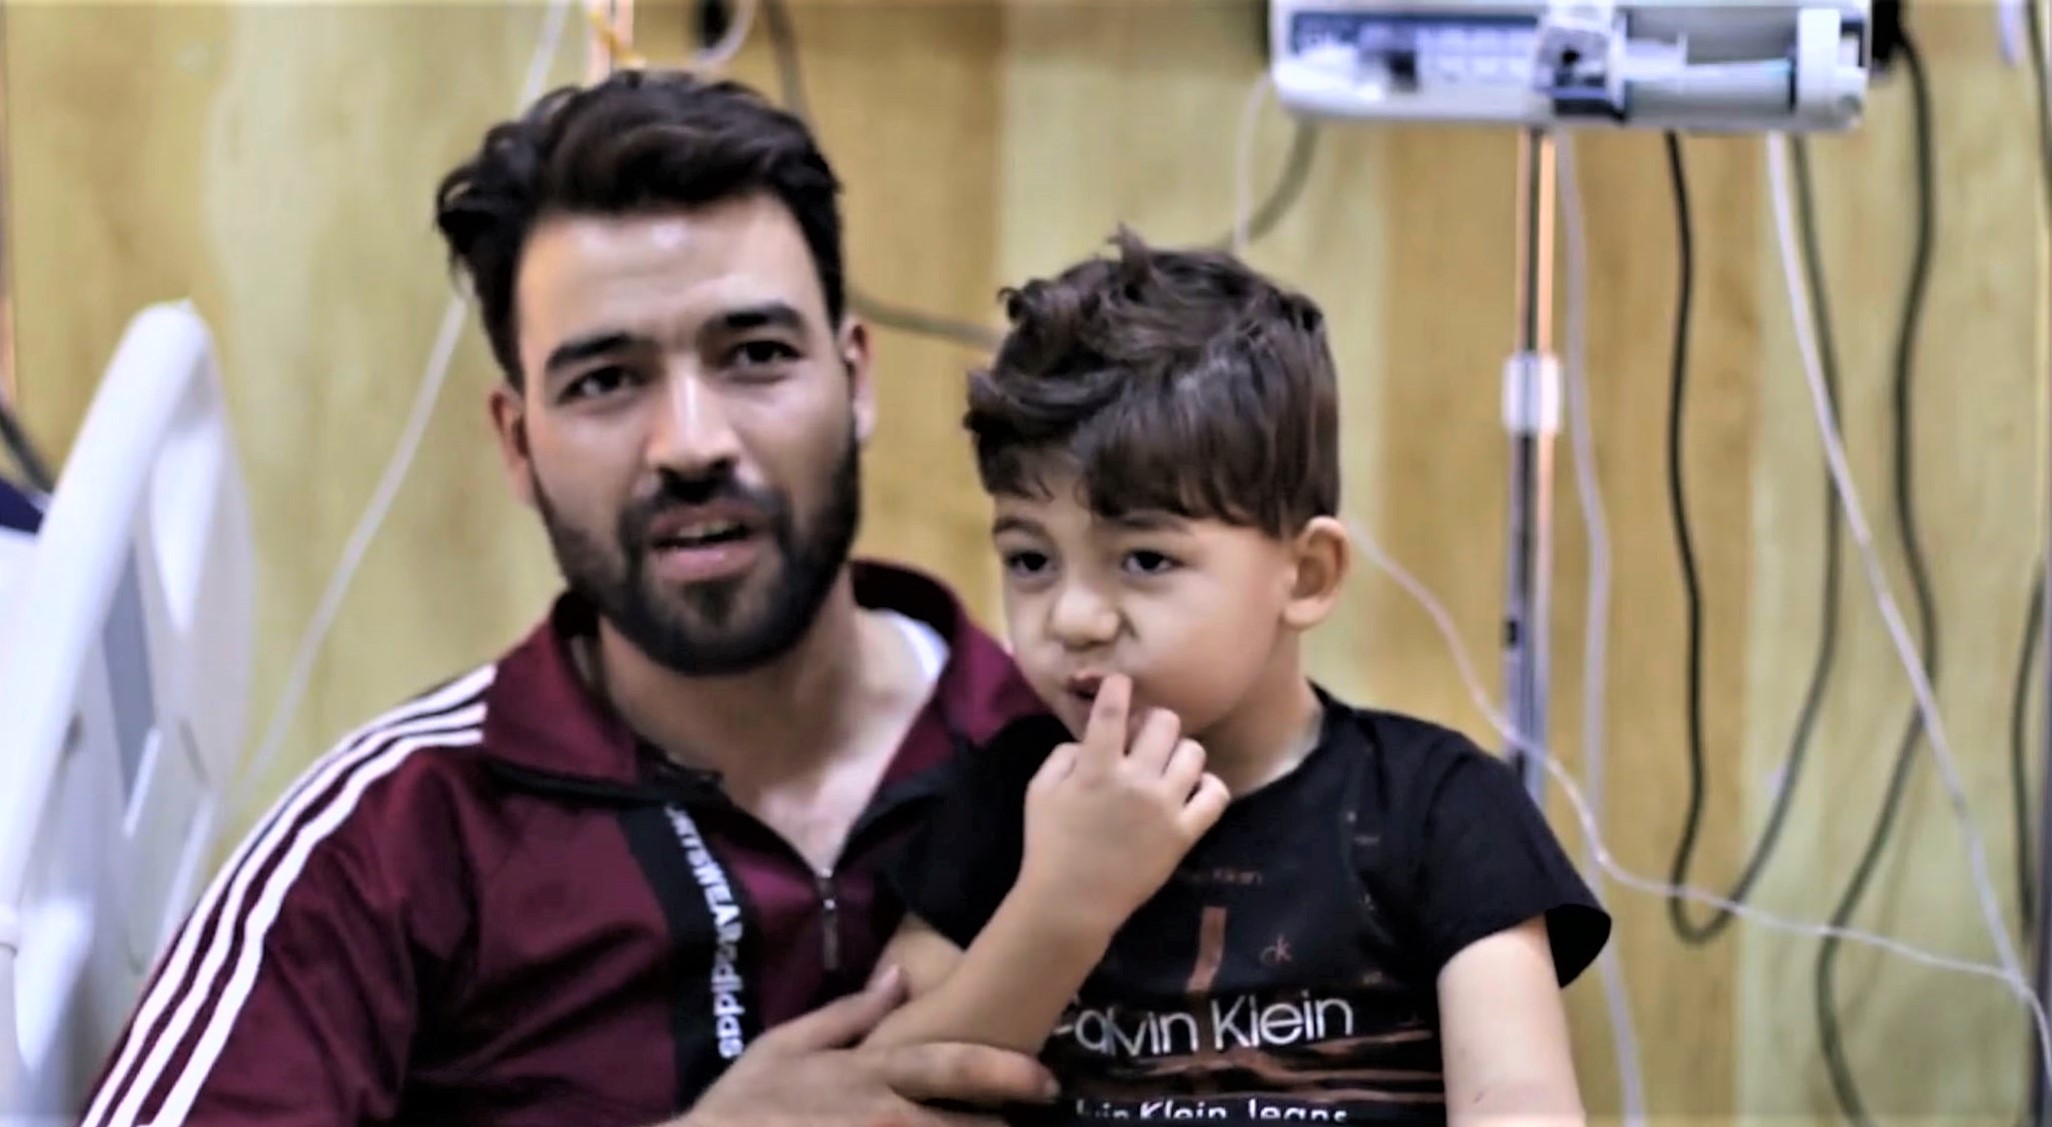 Omar-Syria-Health-4.jpg